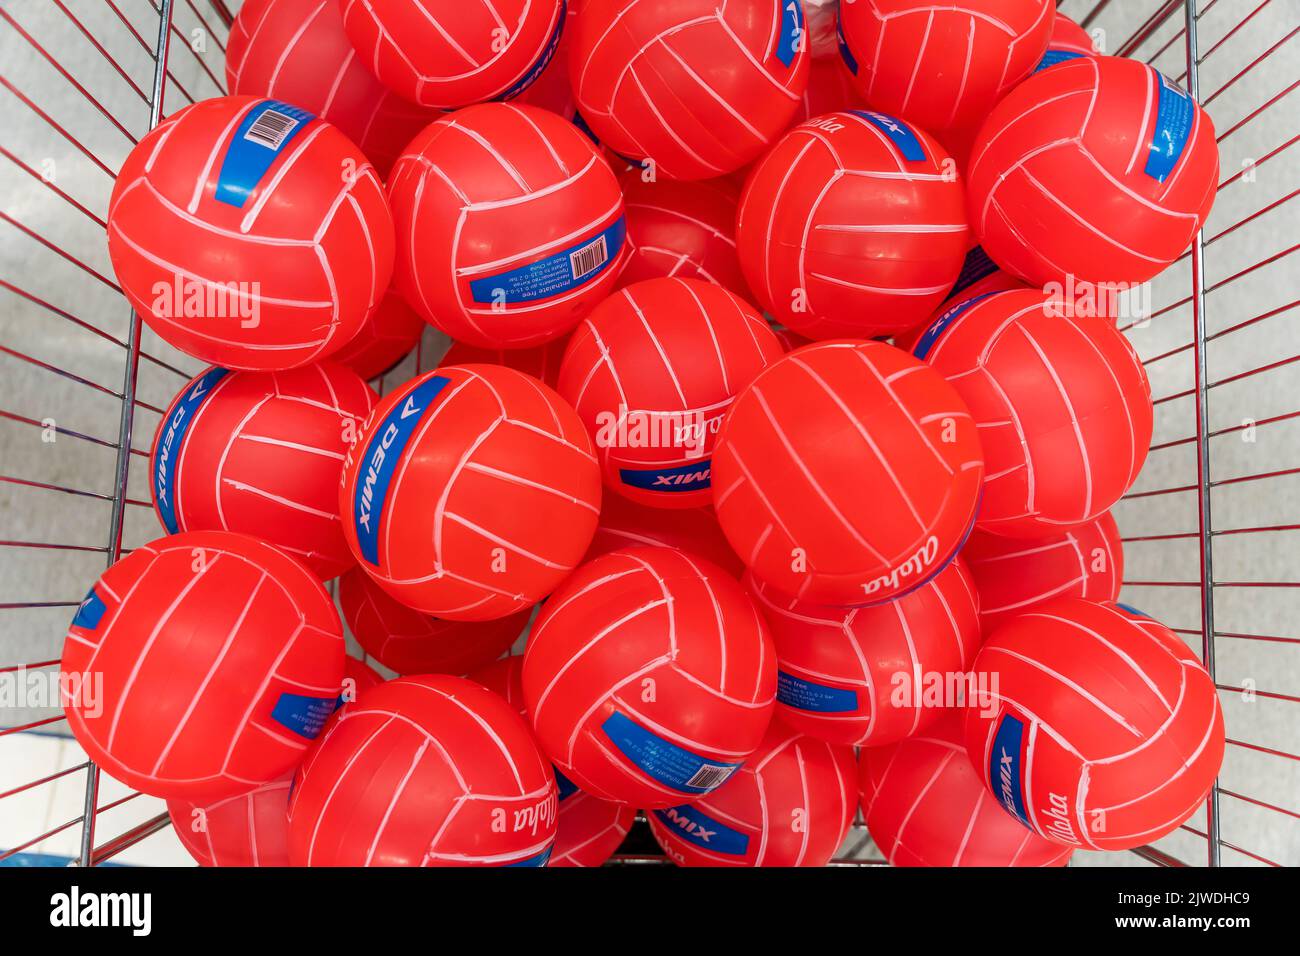 SAINT-PÉTERSBOURG, RUSSIE - 14 AOÛT 2022 : ballons de volley dans le panier Banque D'Images